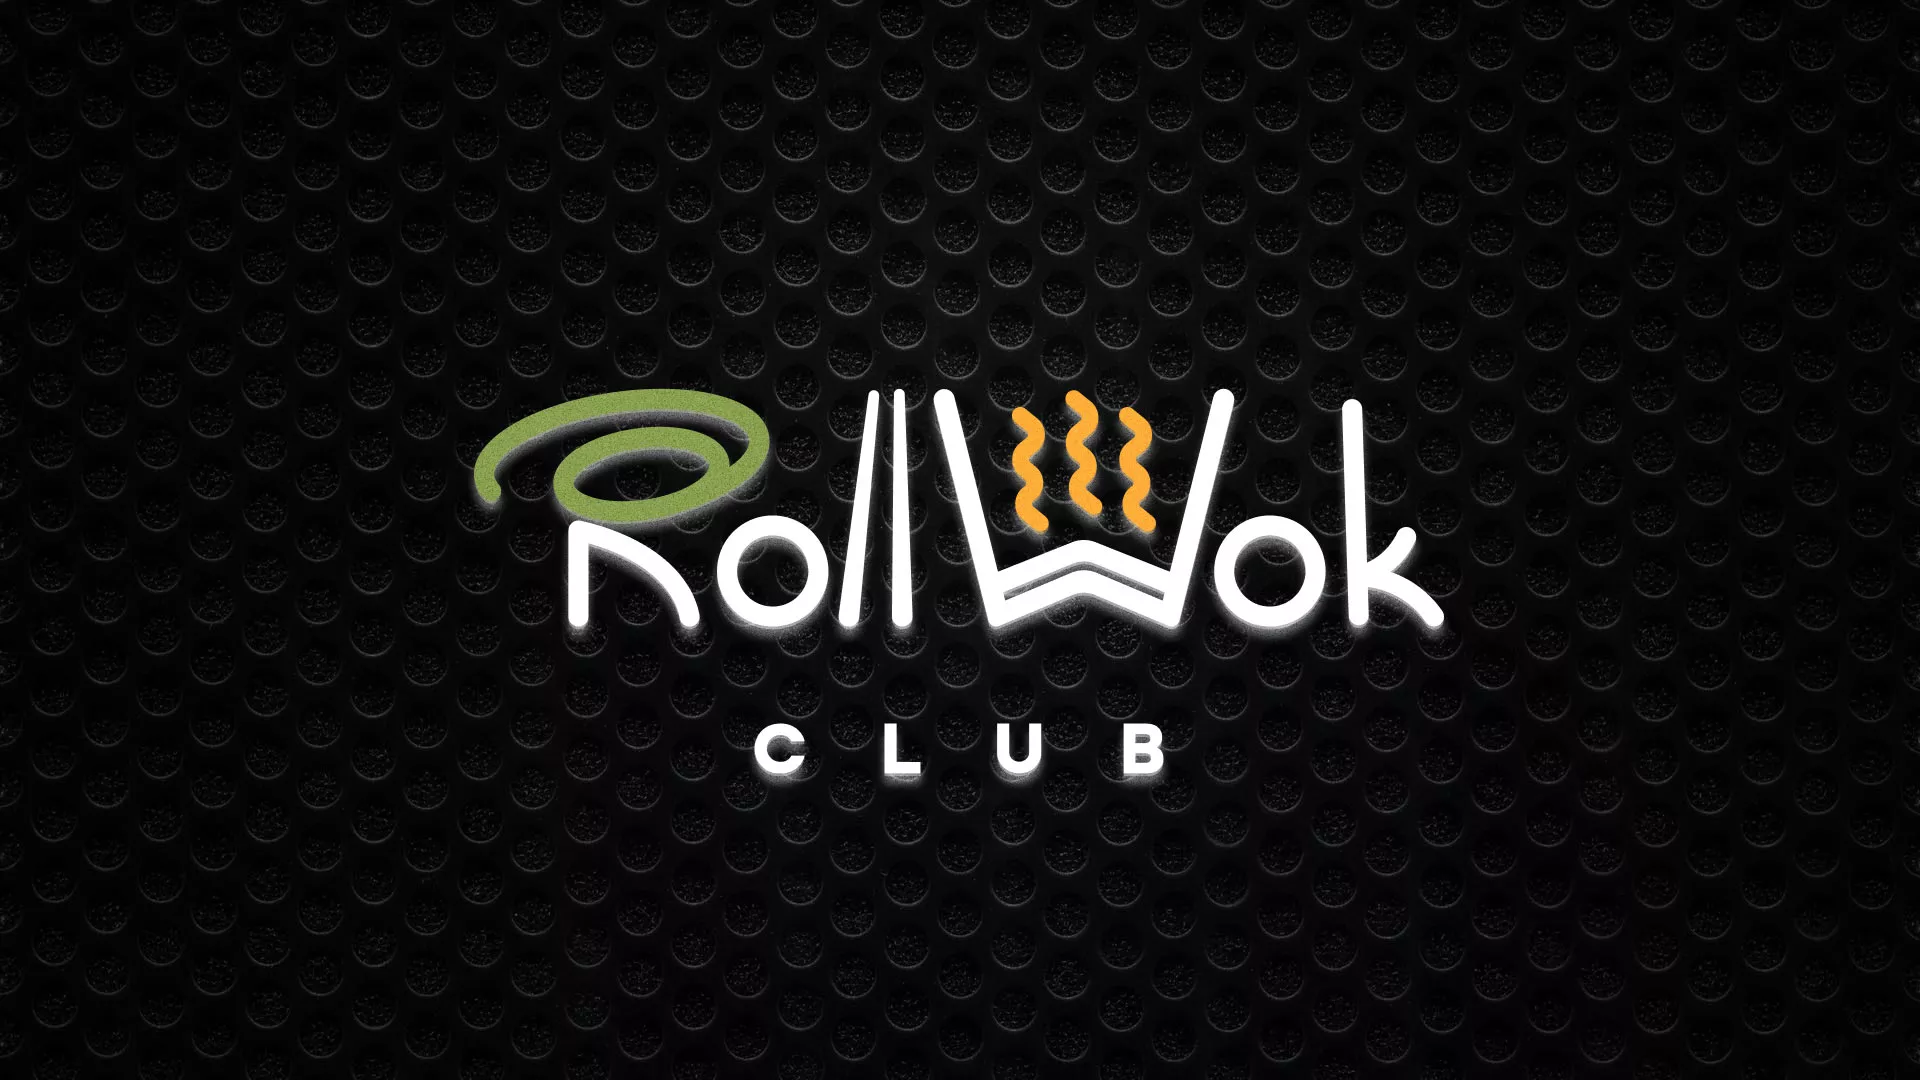 Брендирование торговых точек суши-бара «Roll Wok Club» в Магнитогорске